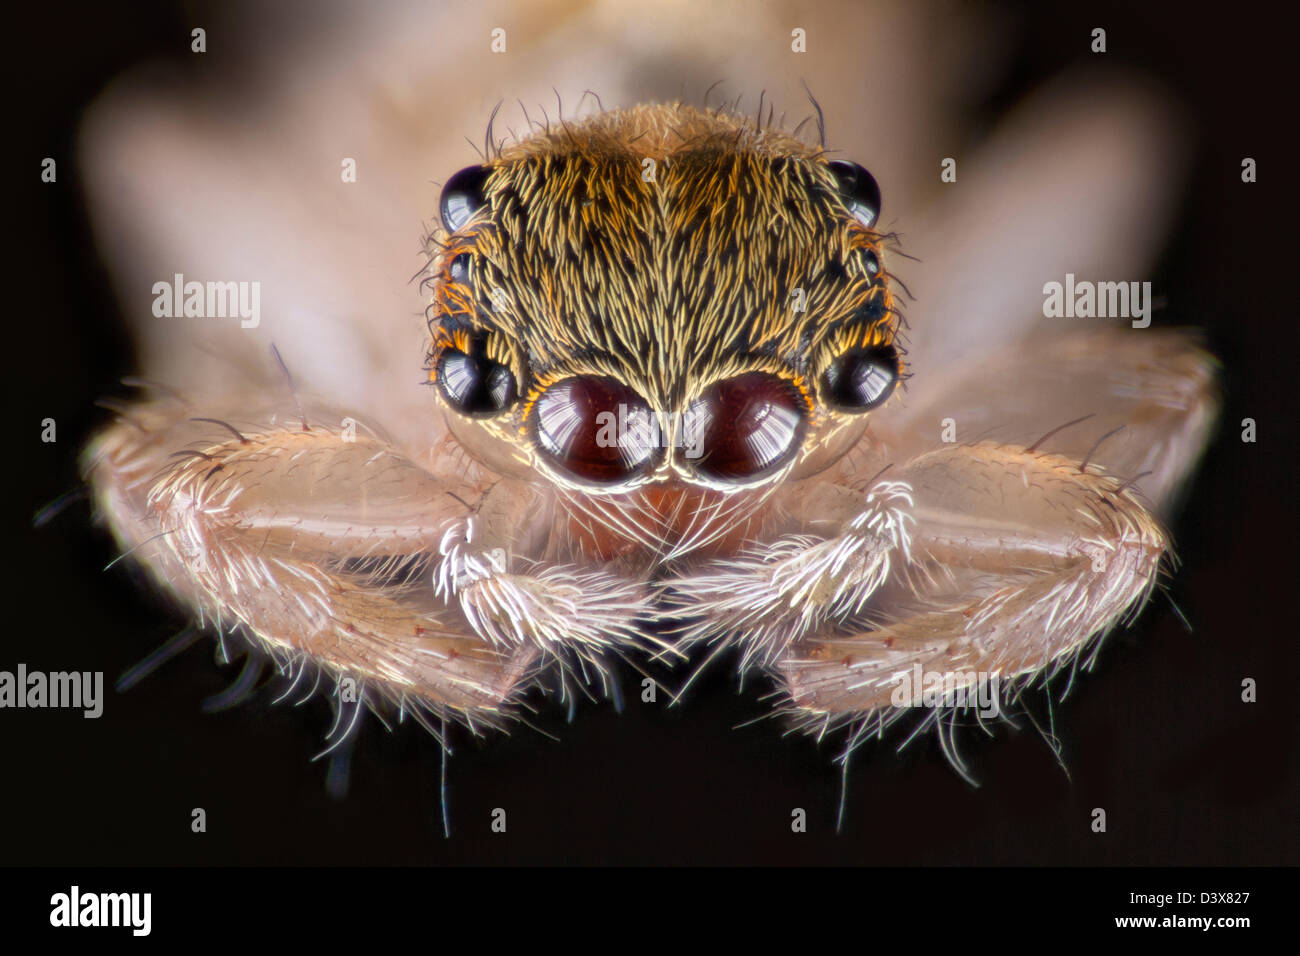 Impilati fotografia macro di un salto malese spider, che mostra la matrice di occhi sulla testa. Foto Stock